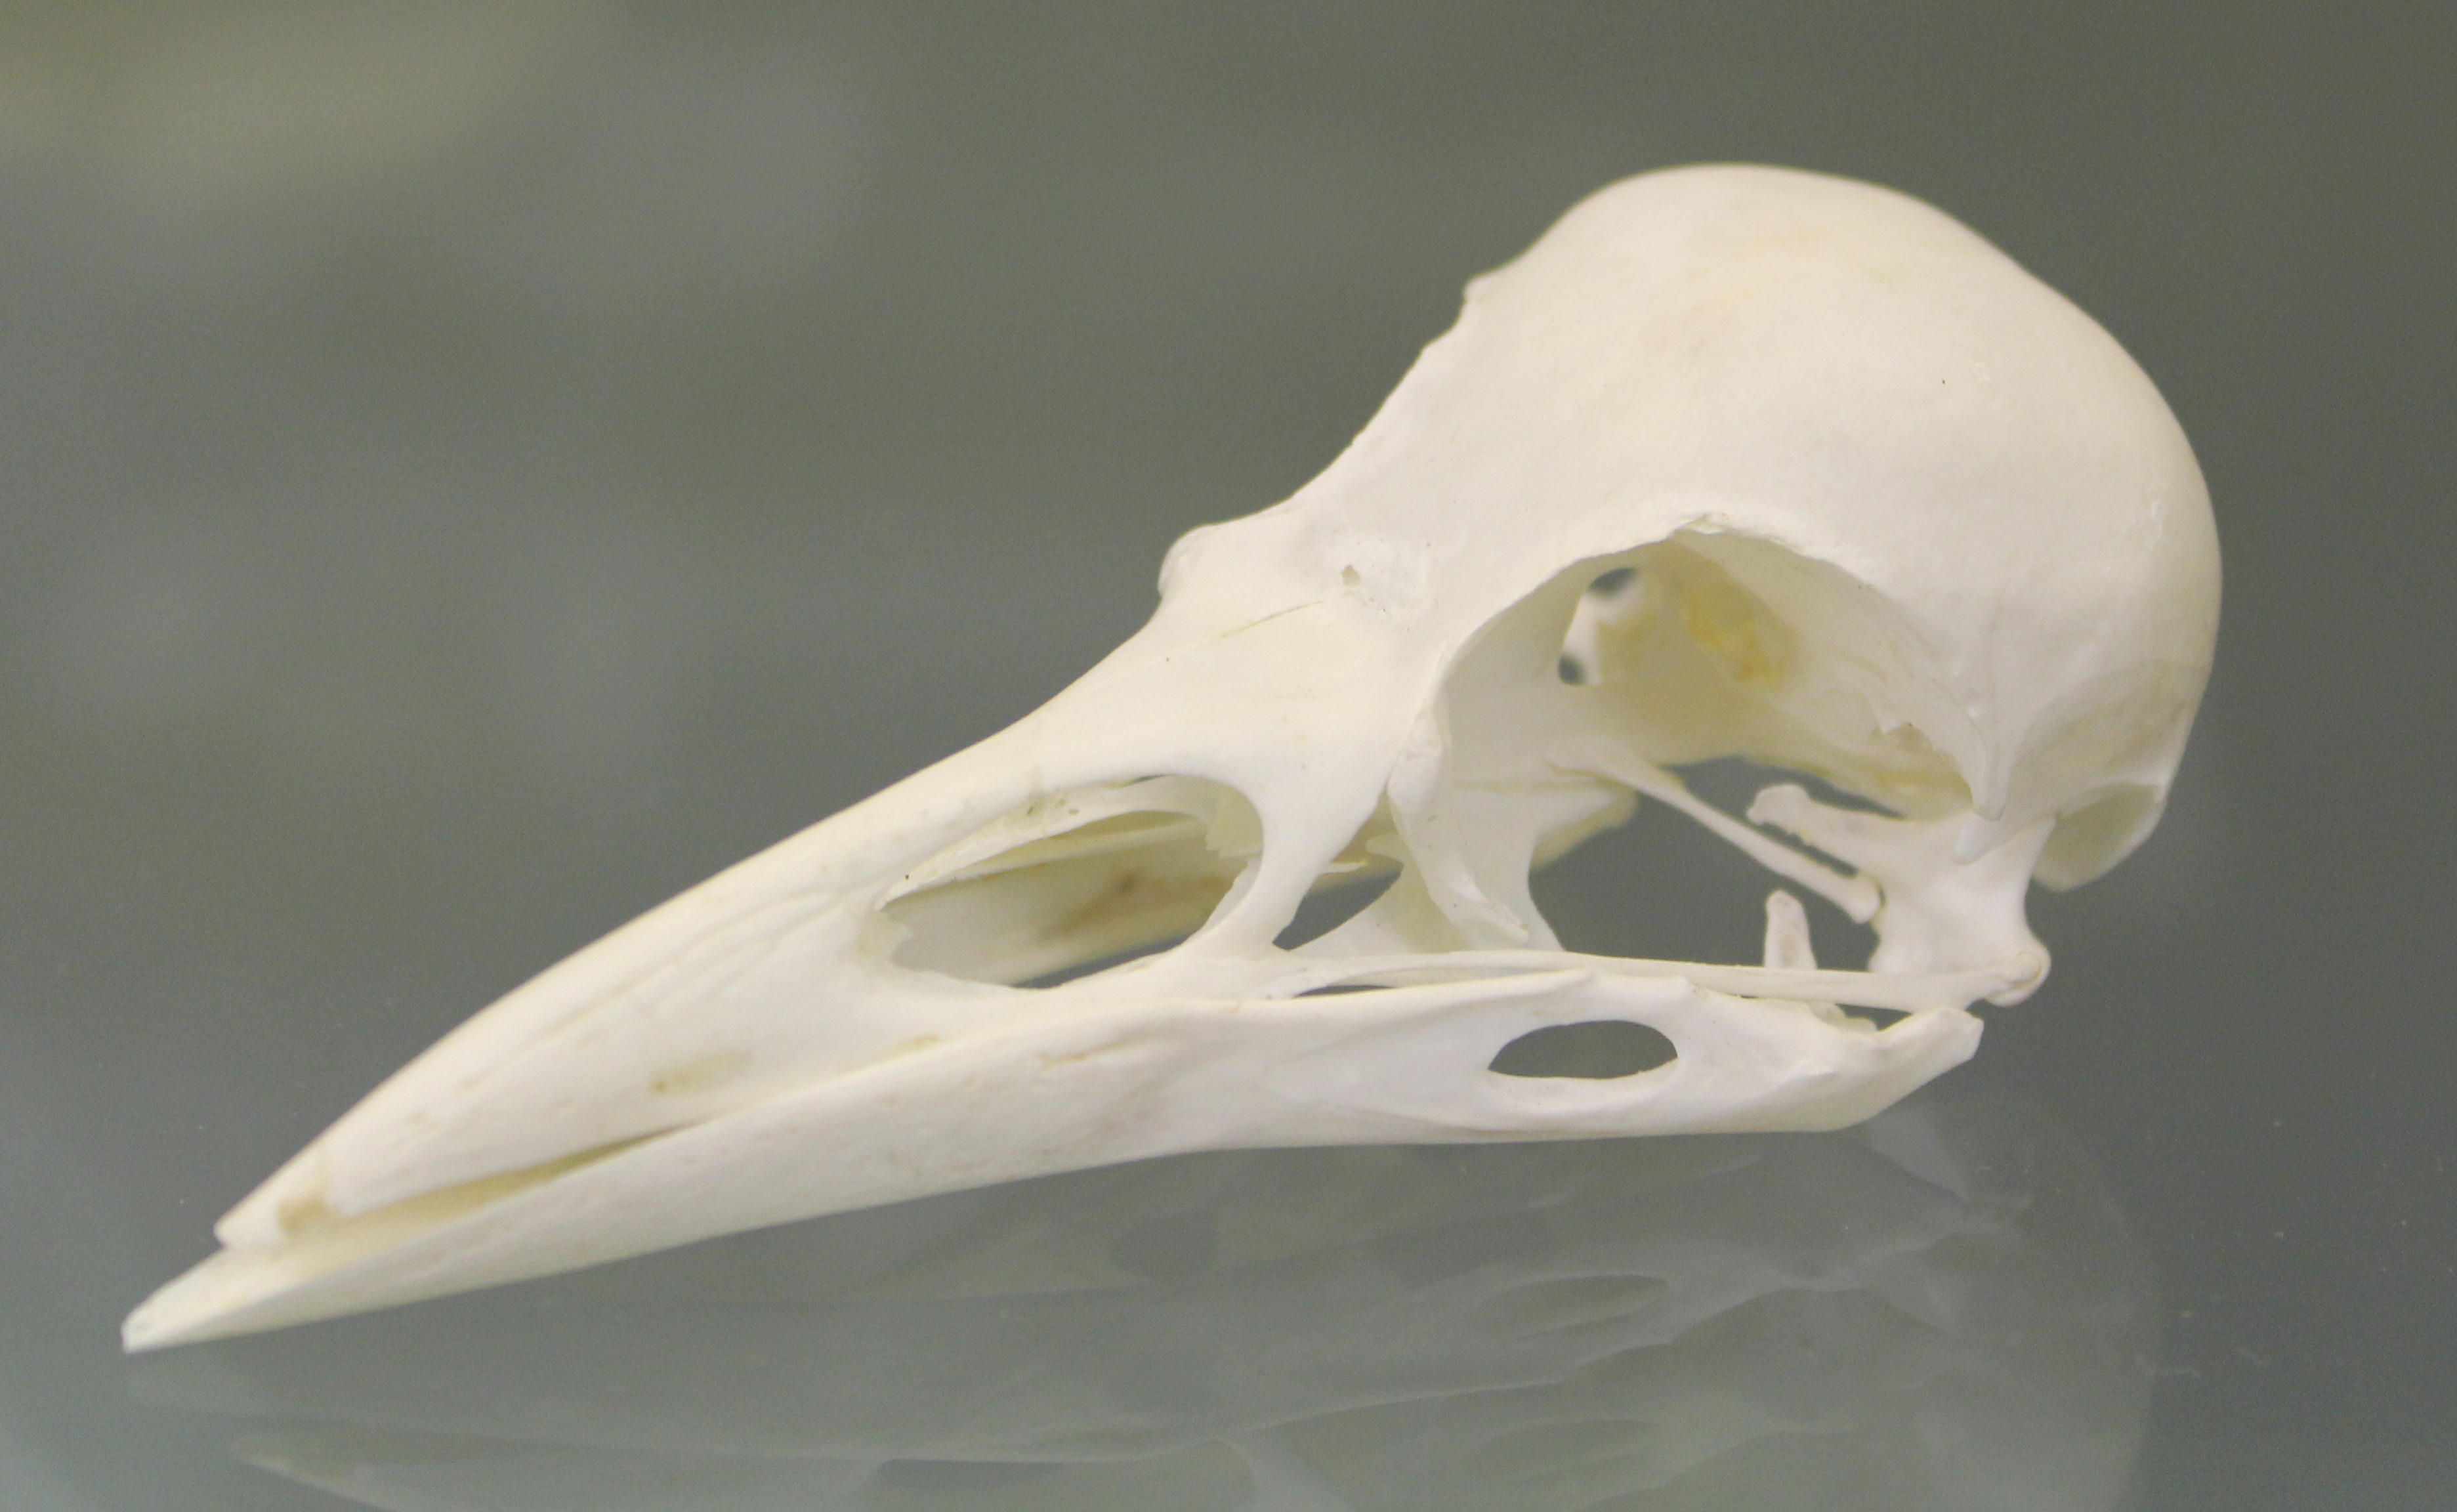 Free photo: Bird skull - Animal, Animals, Beak - Free Download - Jooinn